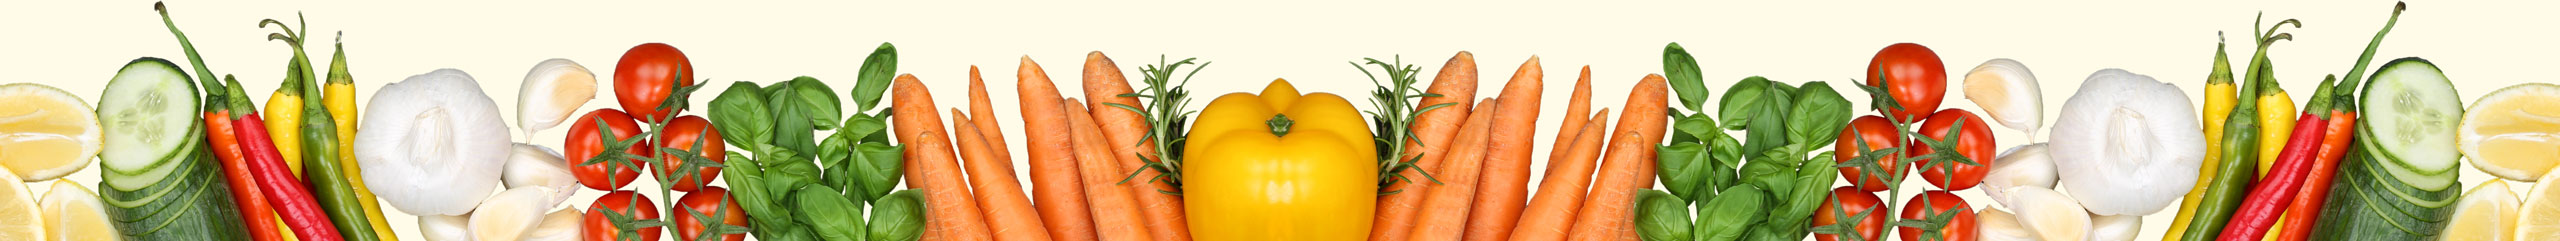 AMC Kochstudio Gemüse gesundes Essen - Garen ohne Wasser